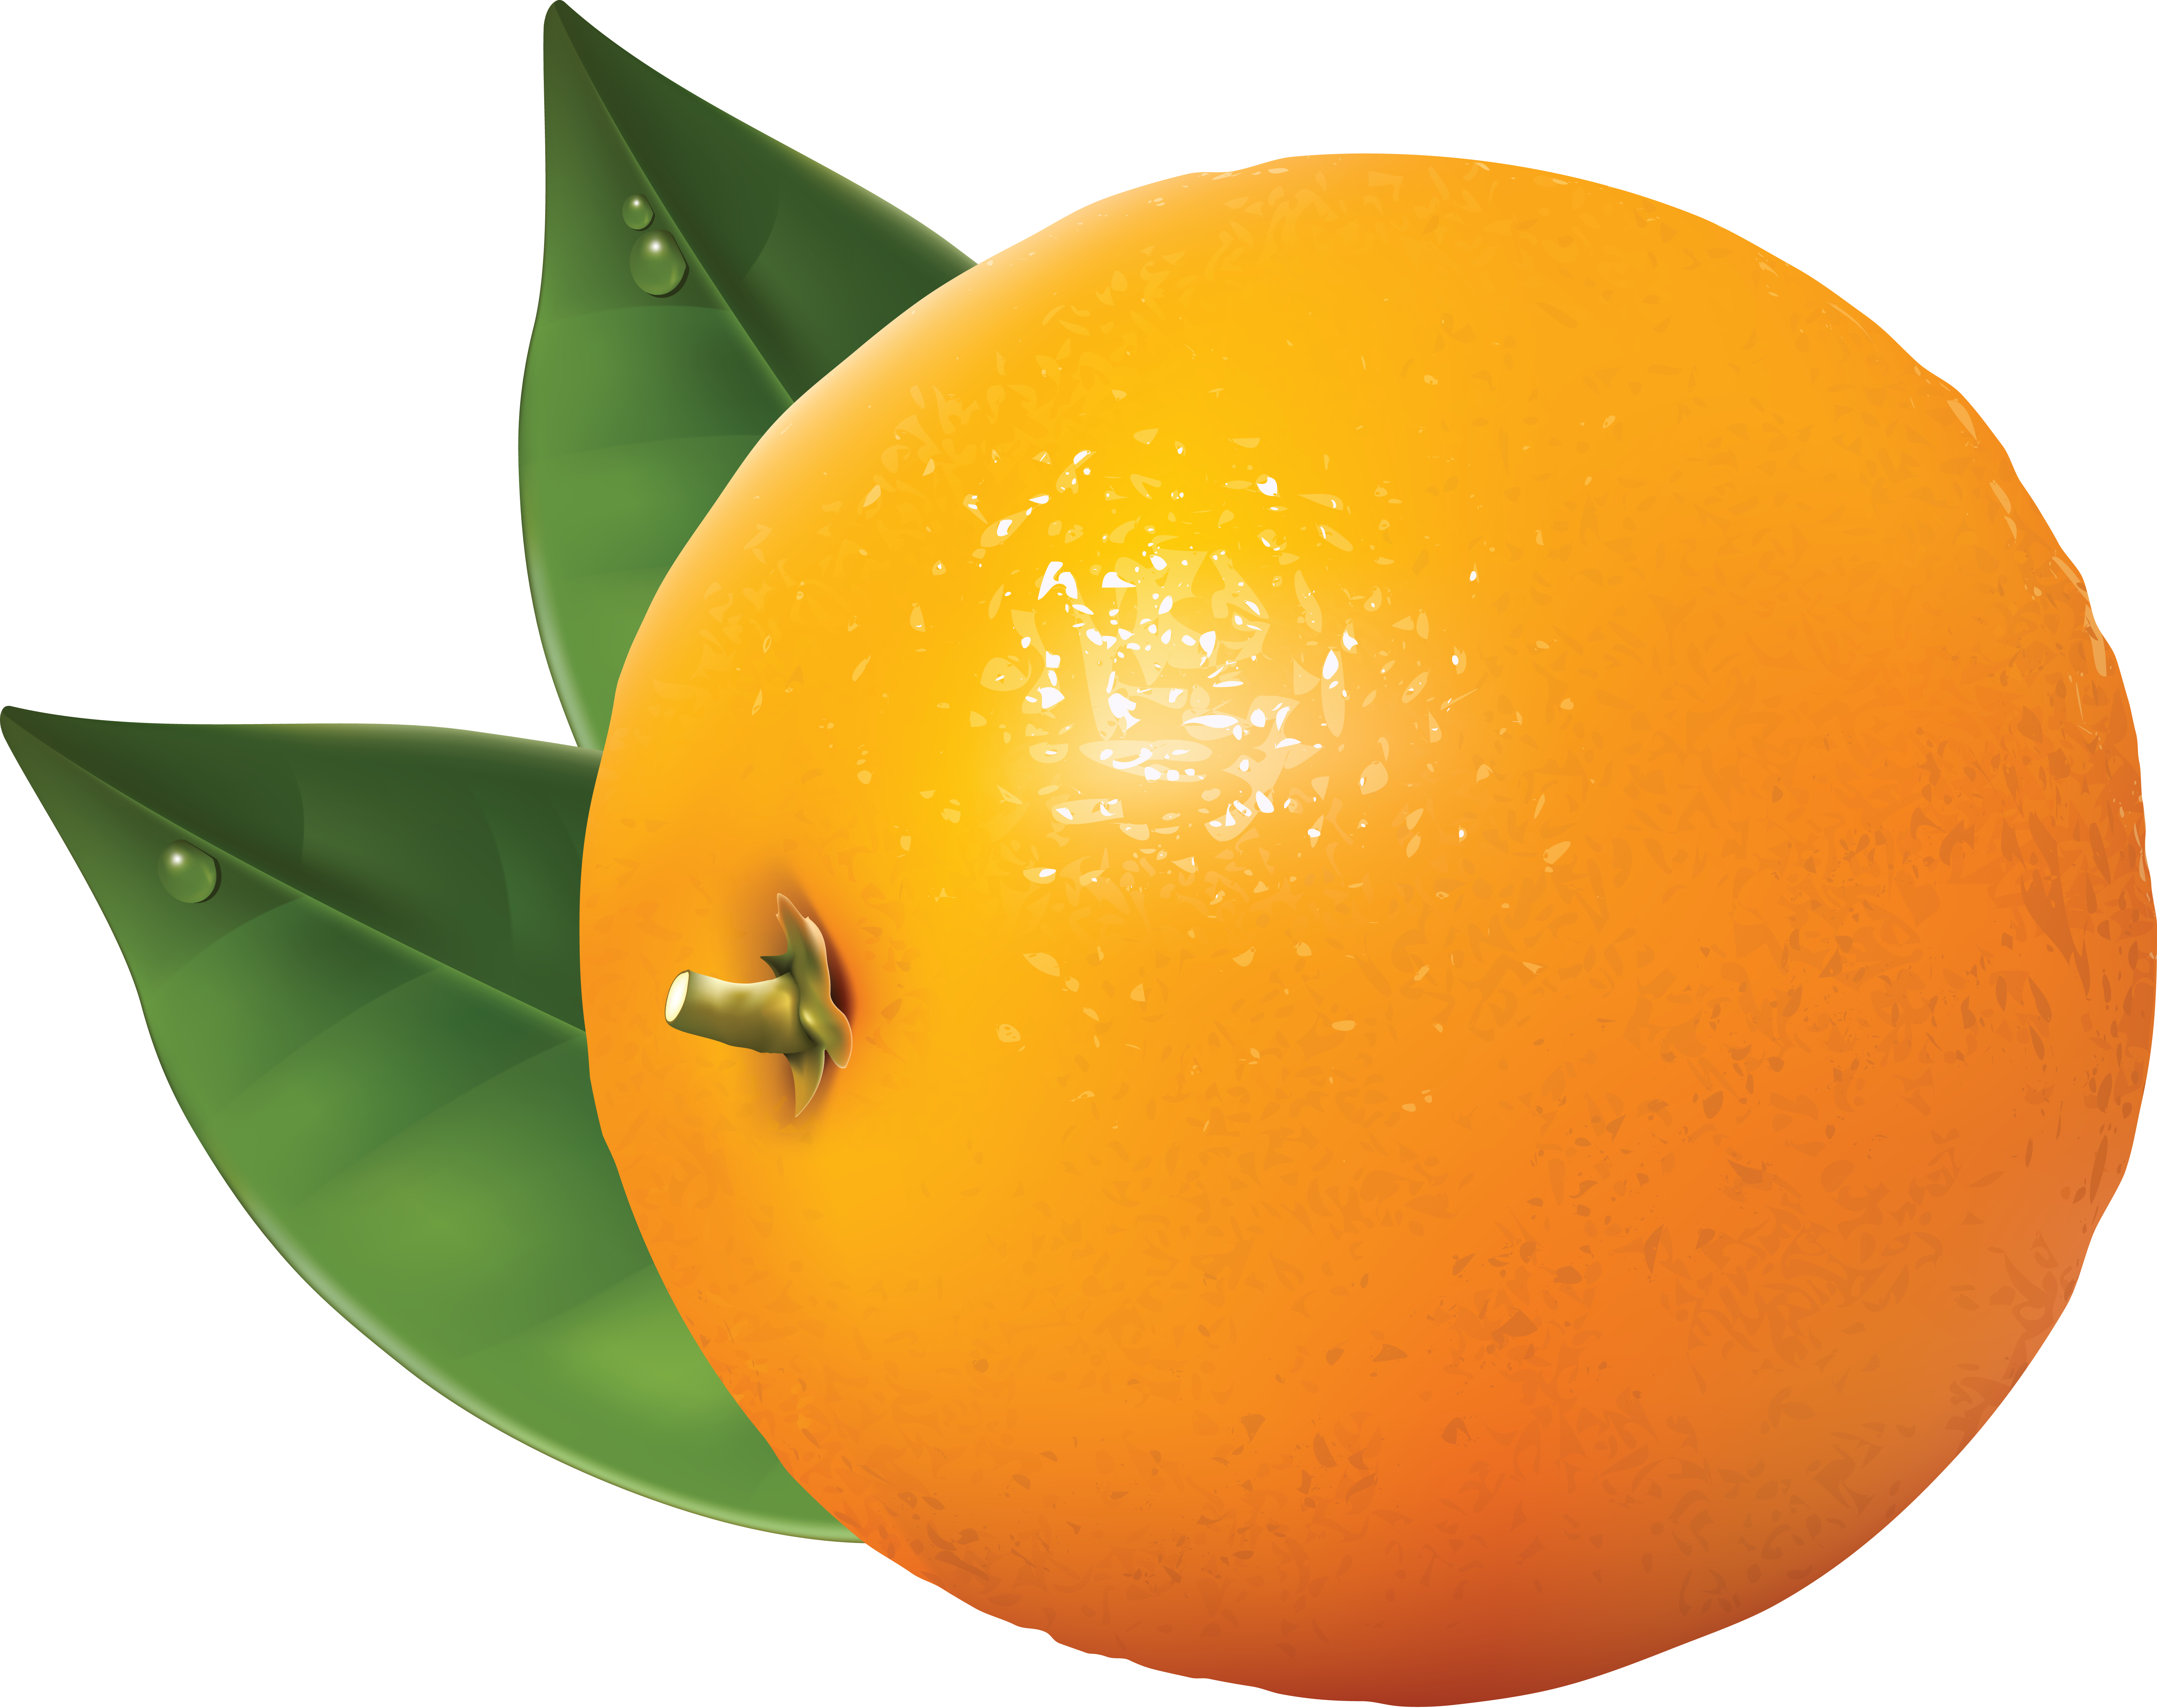 oranges clipart foods